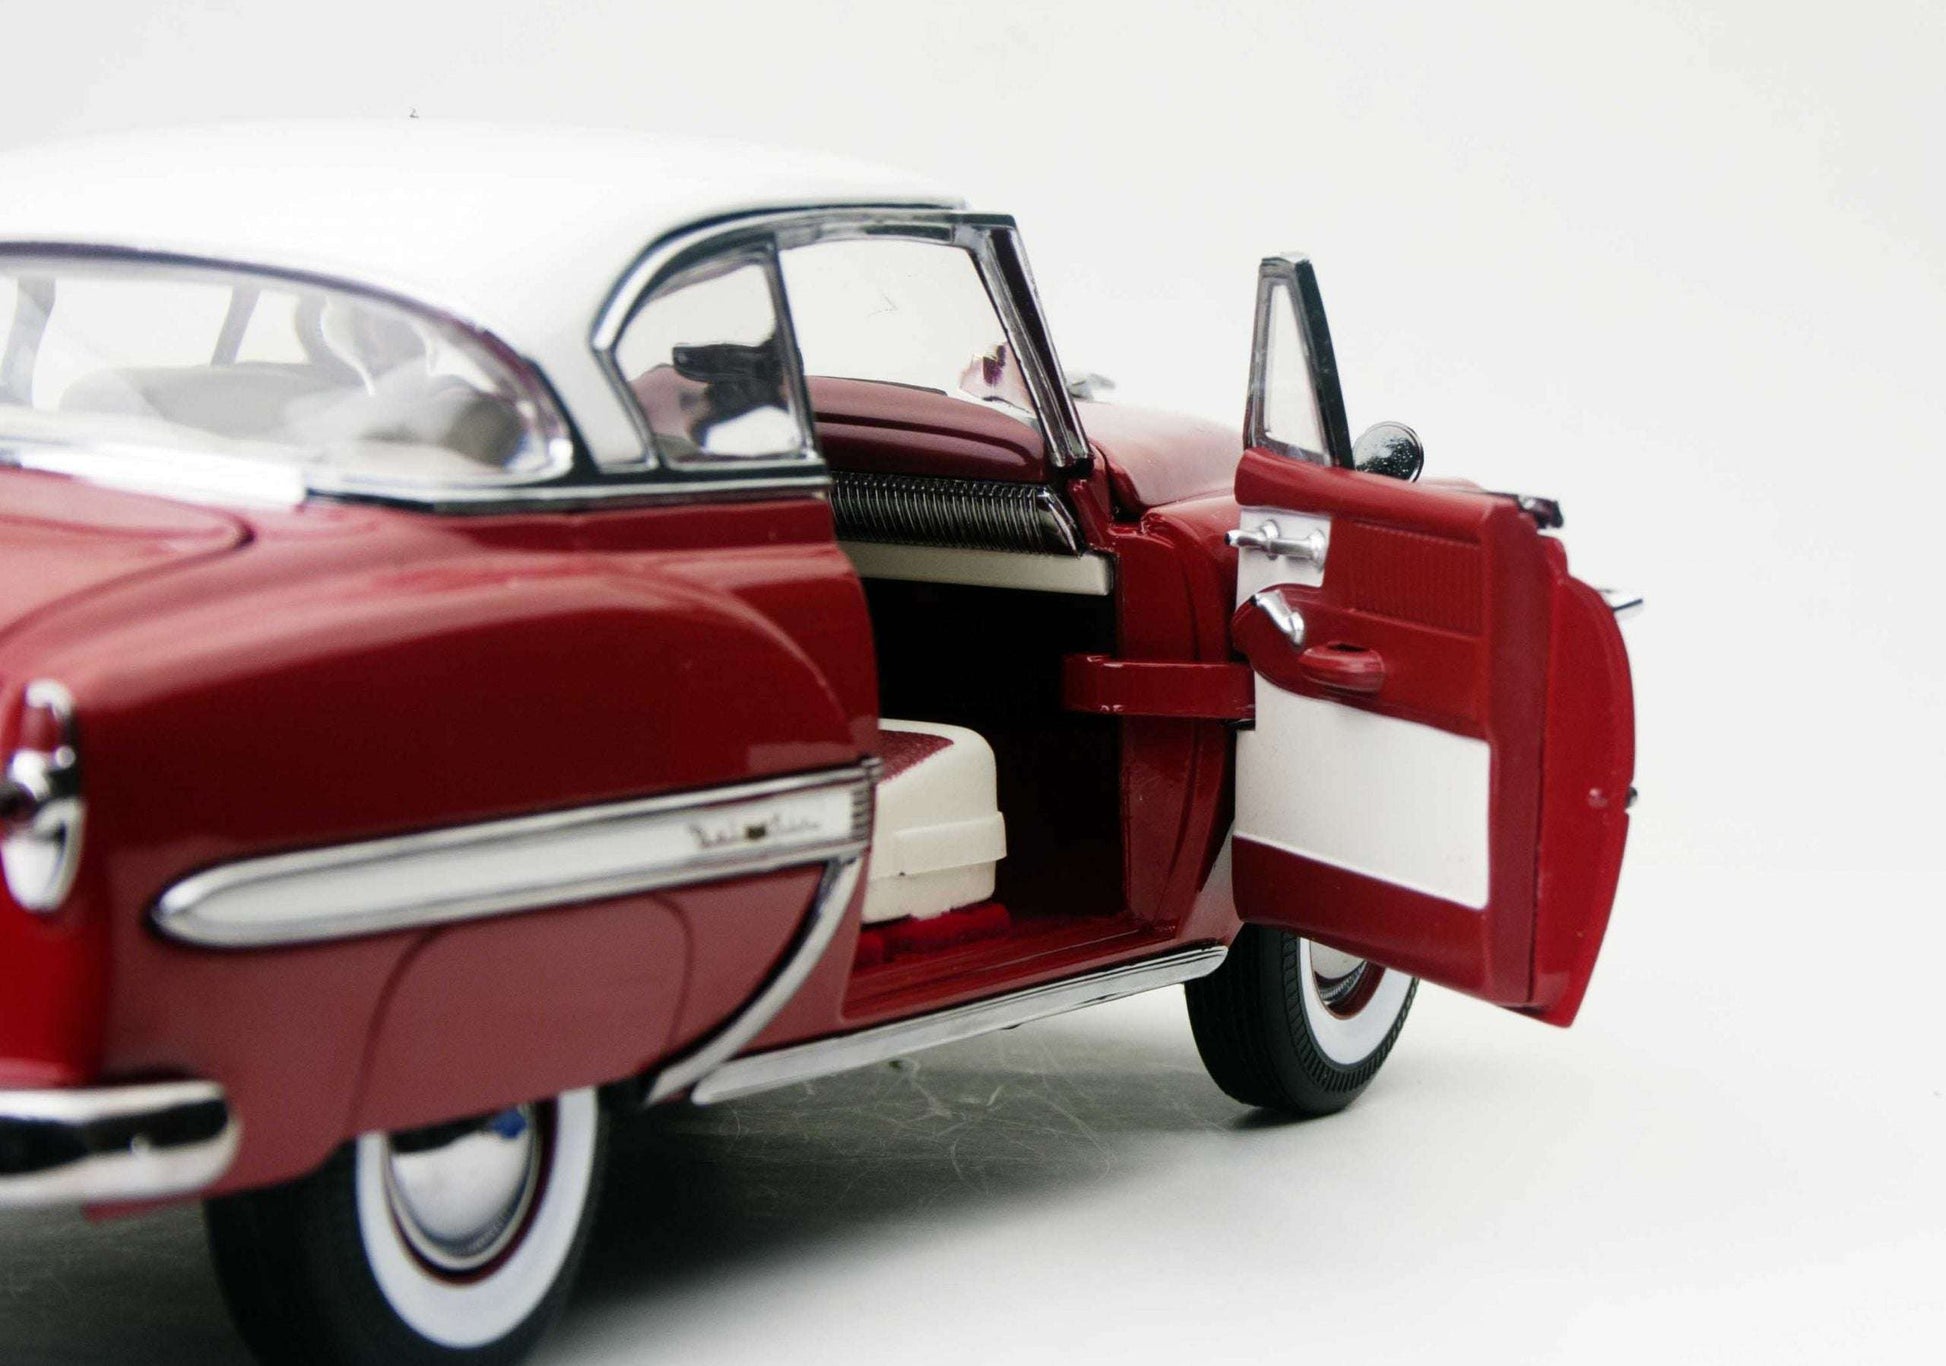 1953 Chevrolet Bel Air Hard Top Coupè 1/18 1/18 modellino da collezione 112 lacasadelmodellismo